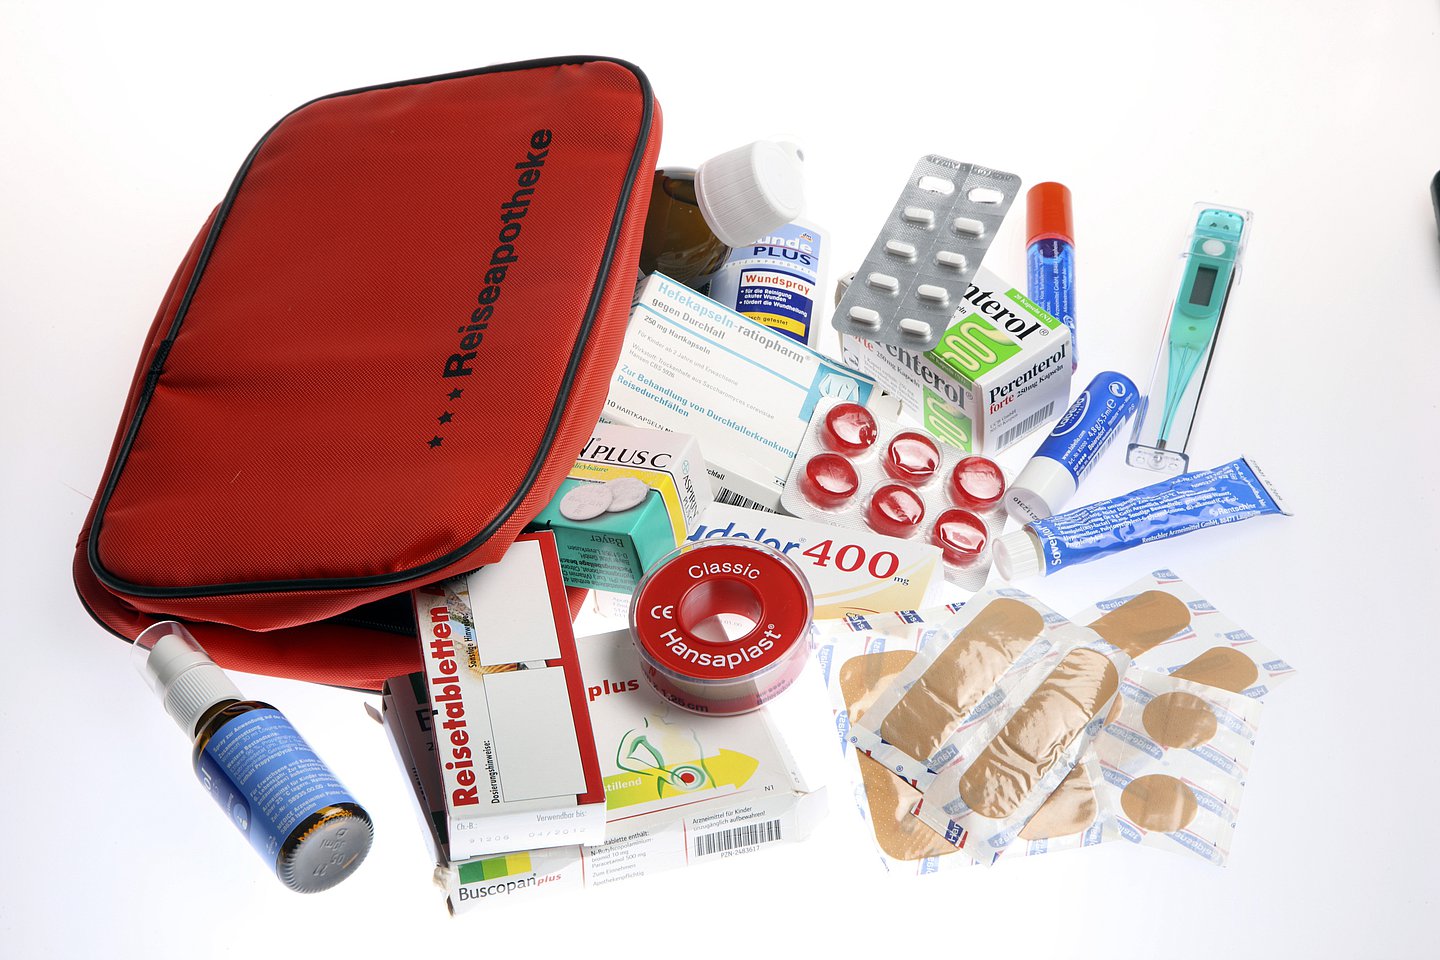 Bild zeigt ein rotes Täschechen mit der Aufschrift "Reiseapotheke". Drumherum verscheiedene Medikamente un dMediziprodukte wie Tabeltte, Nasenspray, Pflaster  und Fieberthermometer.